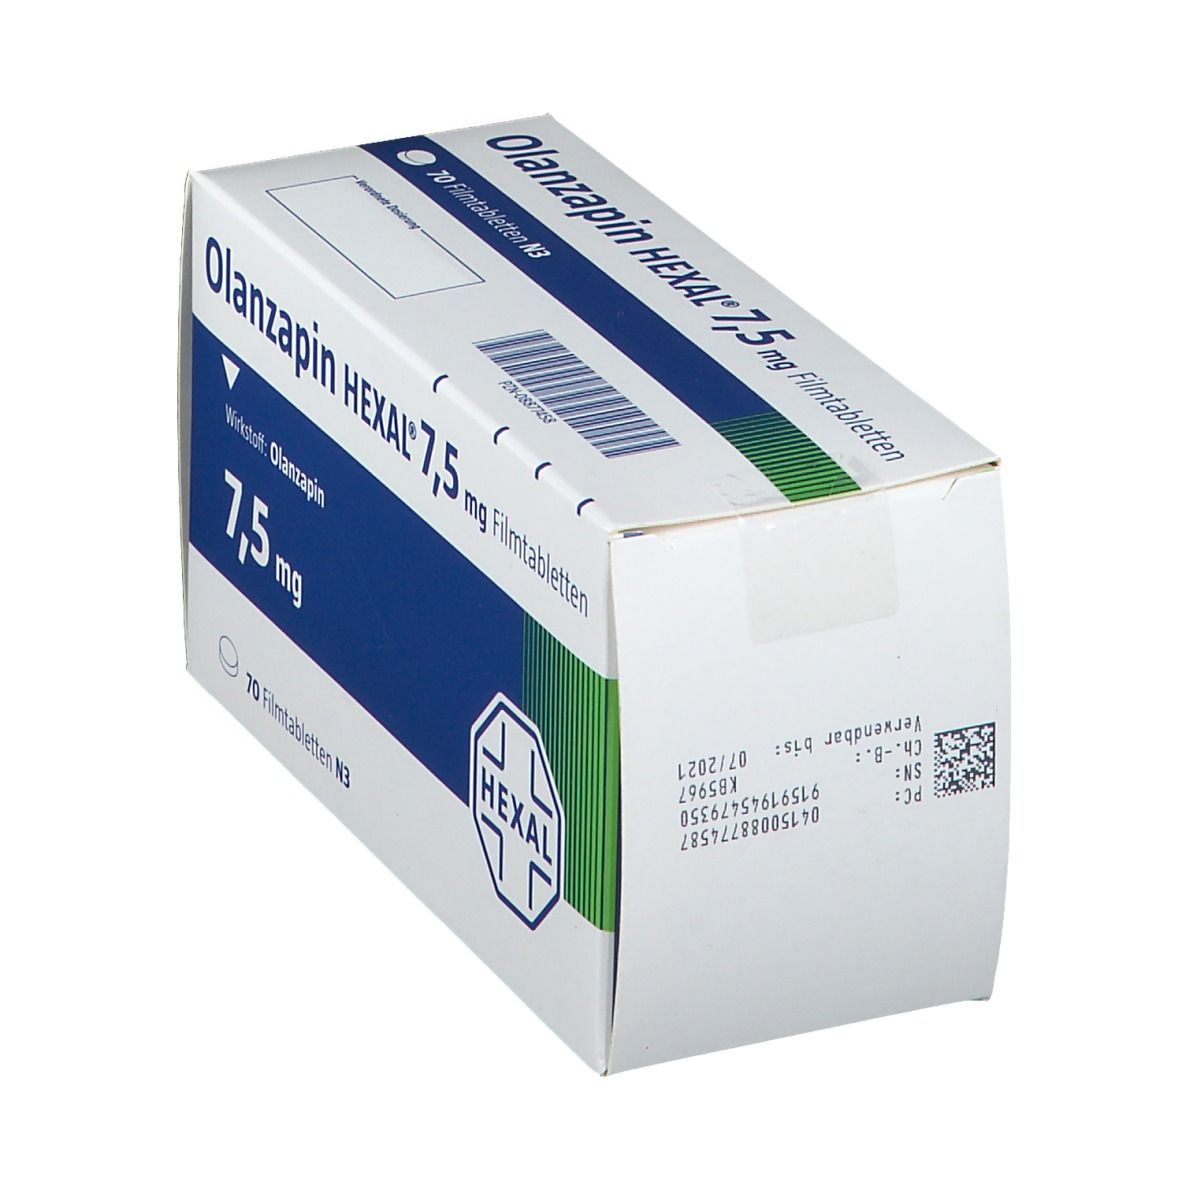 Olanzapin HEXAL® 7,5 mg